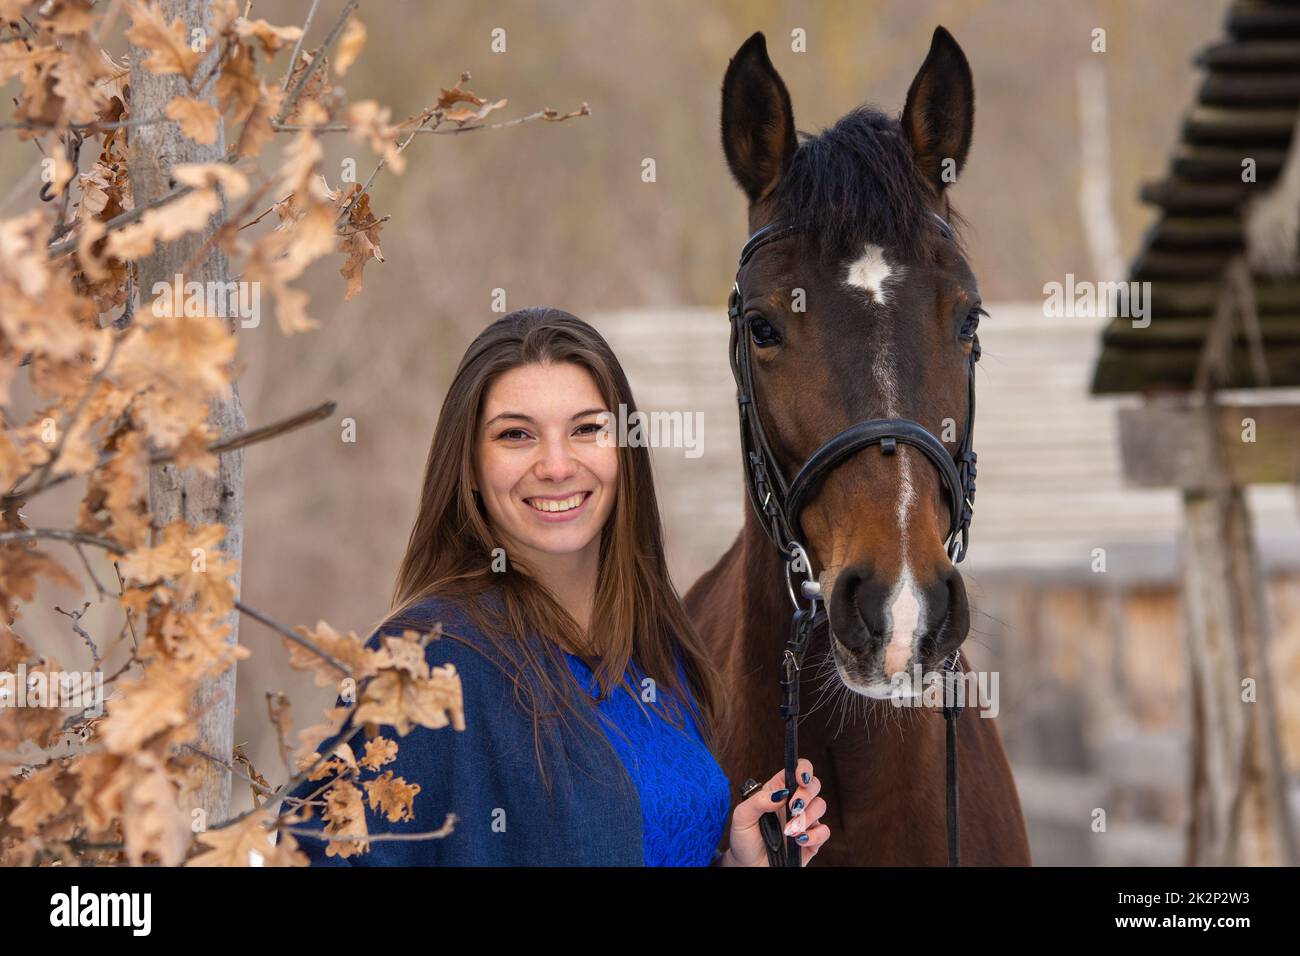 Nahaufnahme eines Pferdes und eines schönen Mädchens mit slawischem Aussehen, vor dem Hintergrund eines Winterwaldes und eines alten Bauernhofes Stockfoto